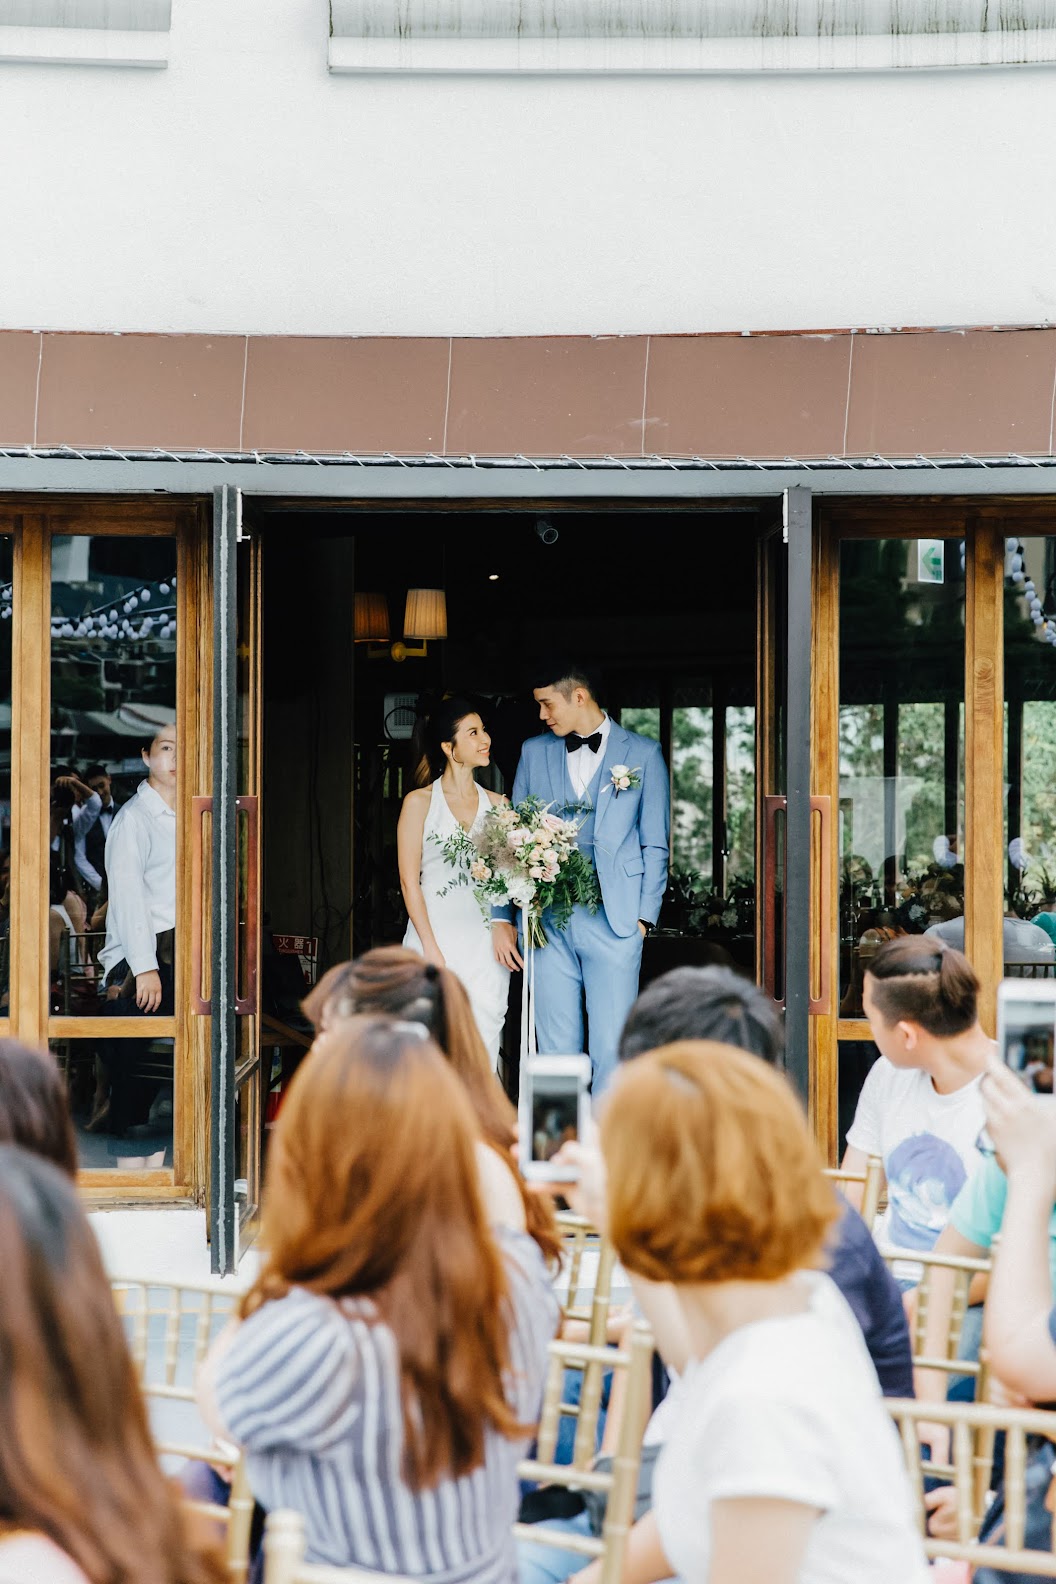 戶外婚禮派對 | S+E WEDDING | 美式婚禮紀錄 – 樂尼尼餐廳婚禮